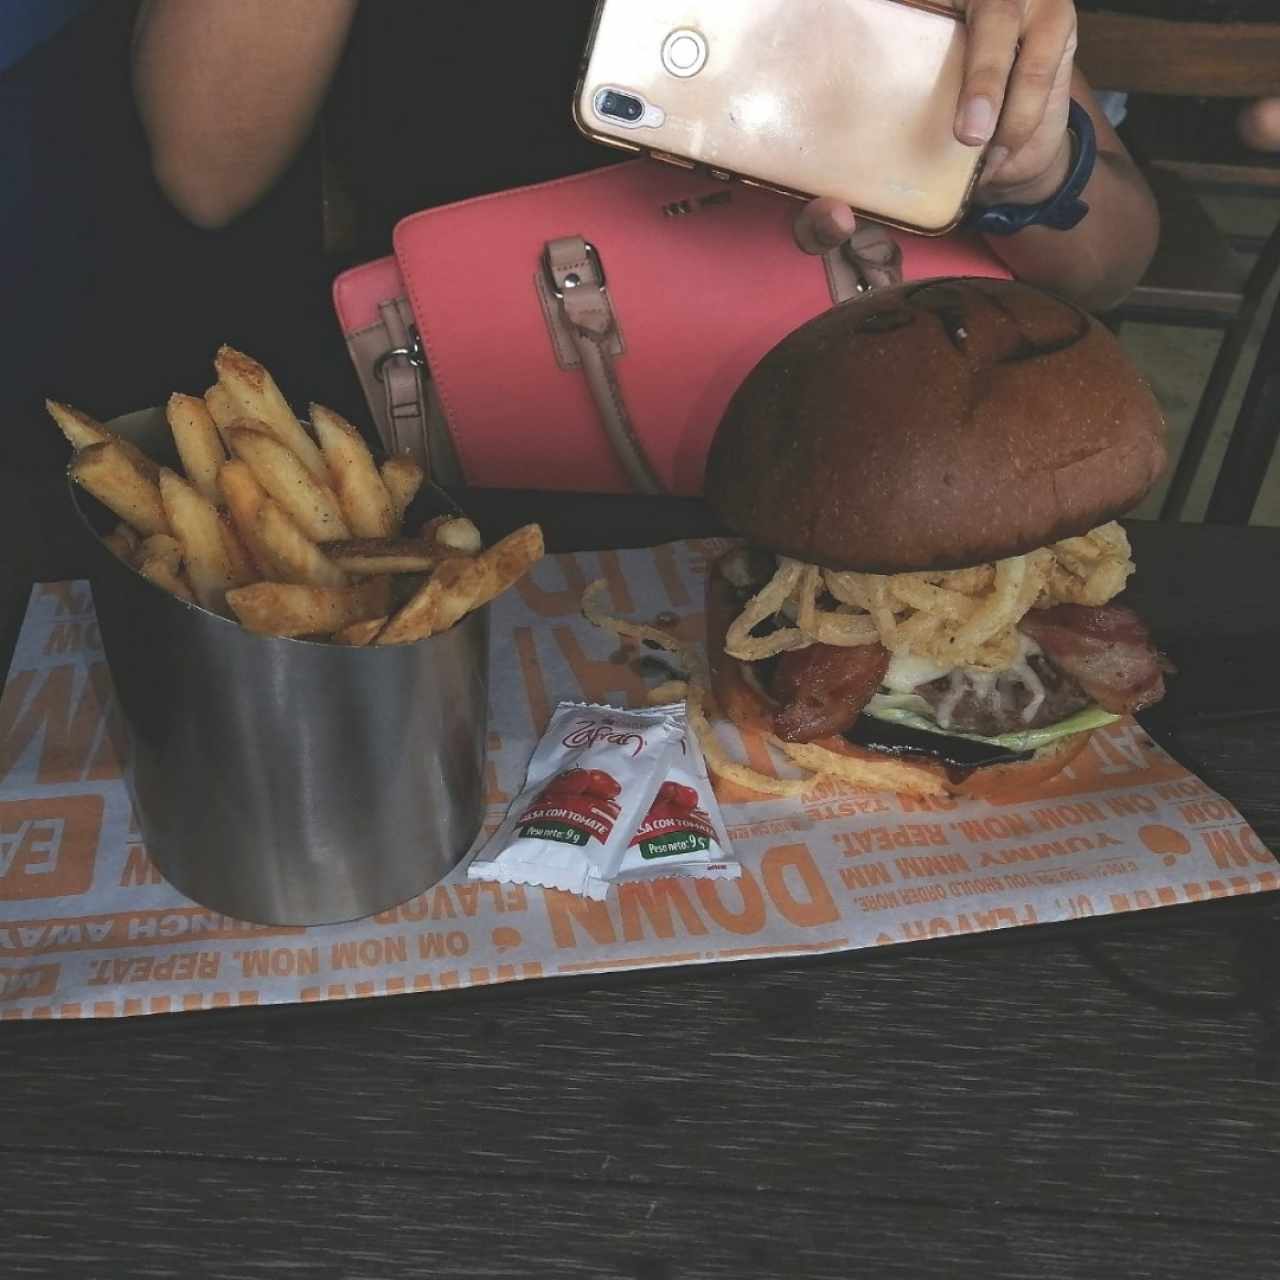 Real Burgers - Cowboy Burger